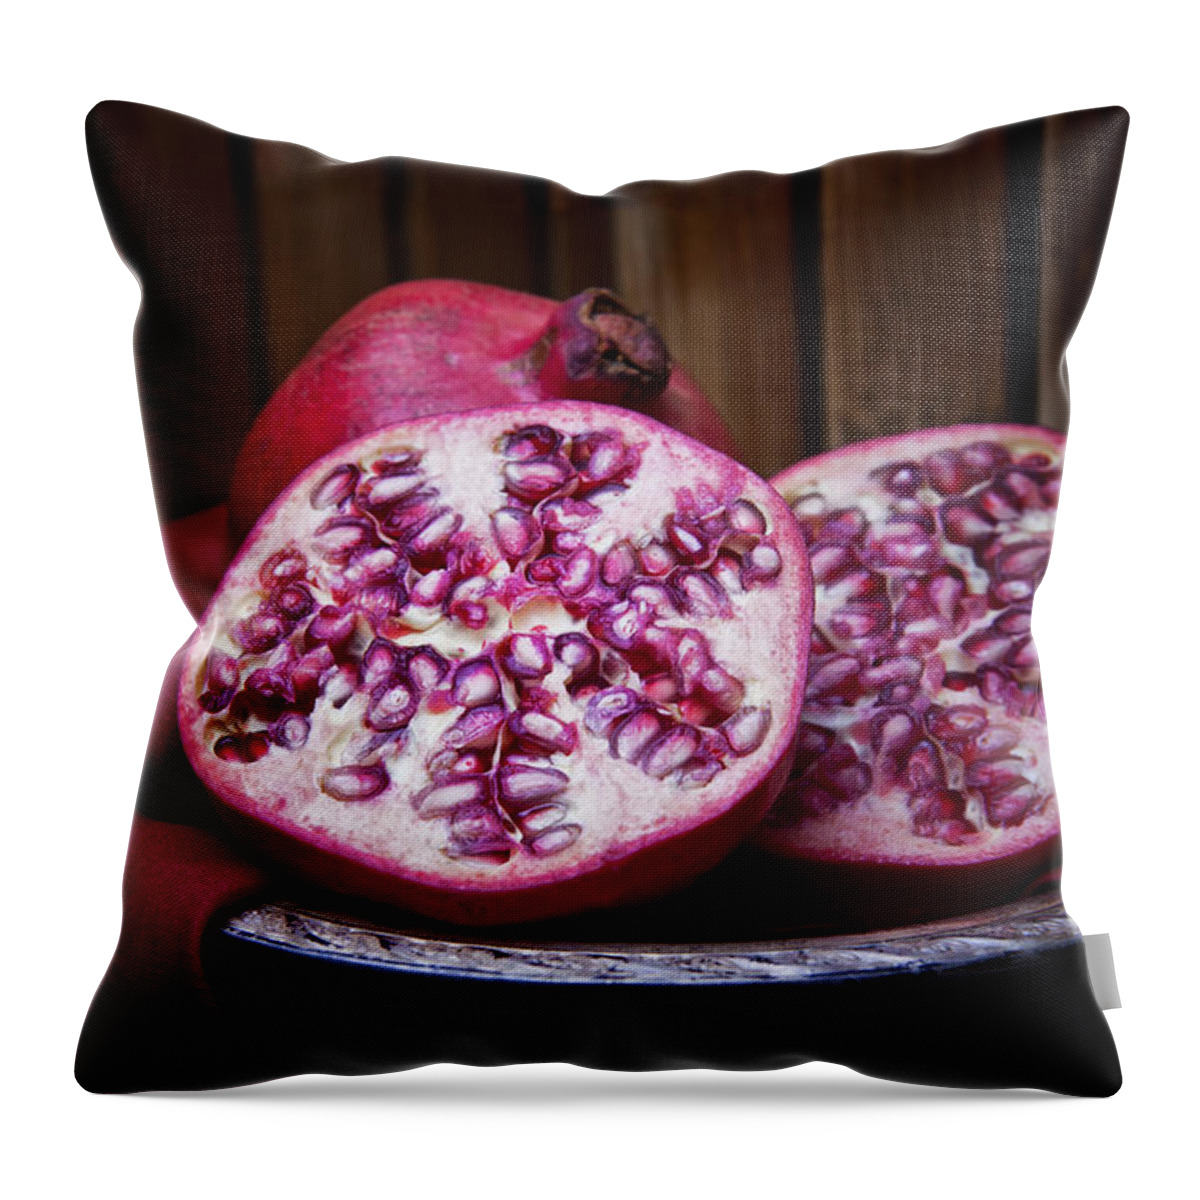 Art Throw Pillow featuring the photograph Pomegranate Still Life by Tom Mc Nemar